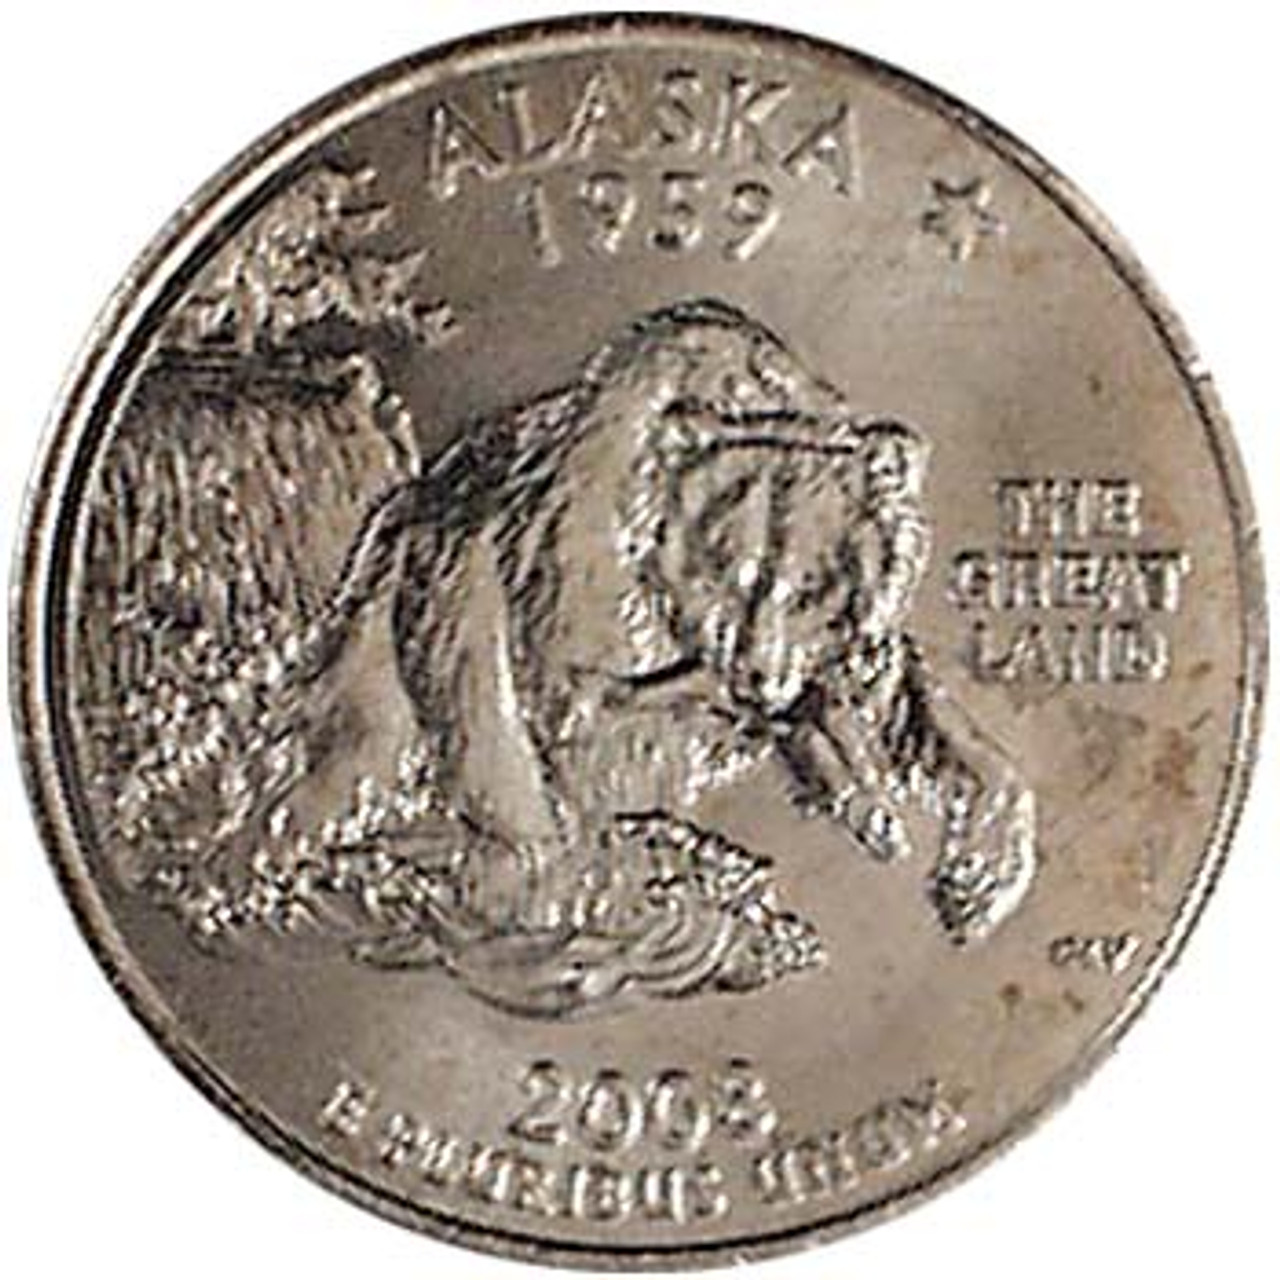 2008-D Alaska Quarter Brilliant Uncirculated Image 1